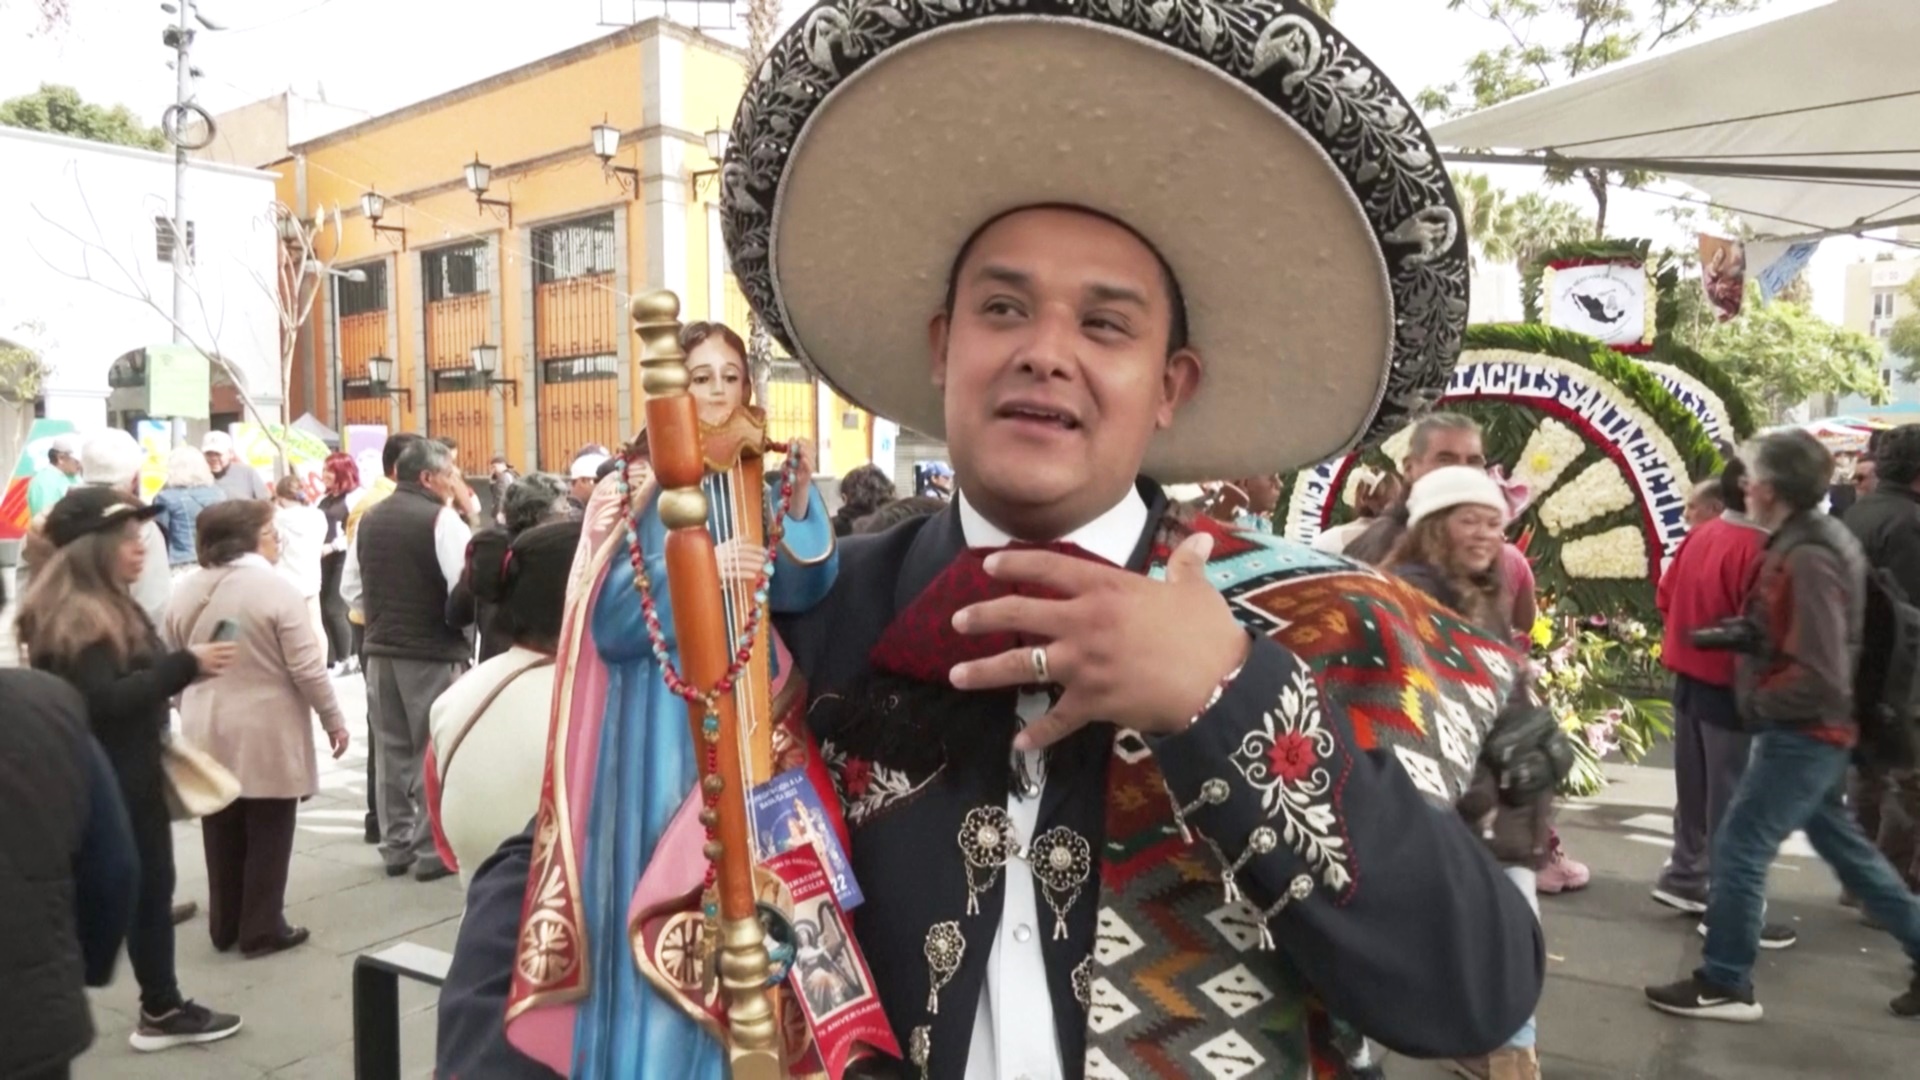 Парад и концерты: мексиканские мариачи отмечают день своей покровительницы